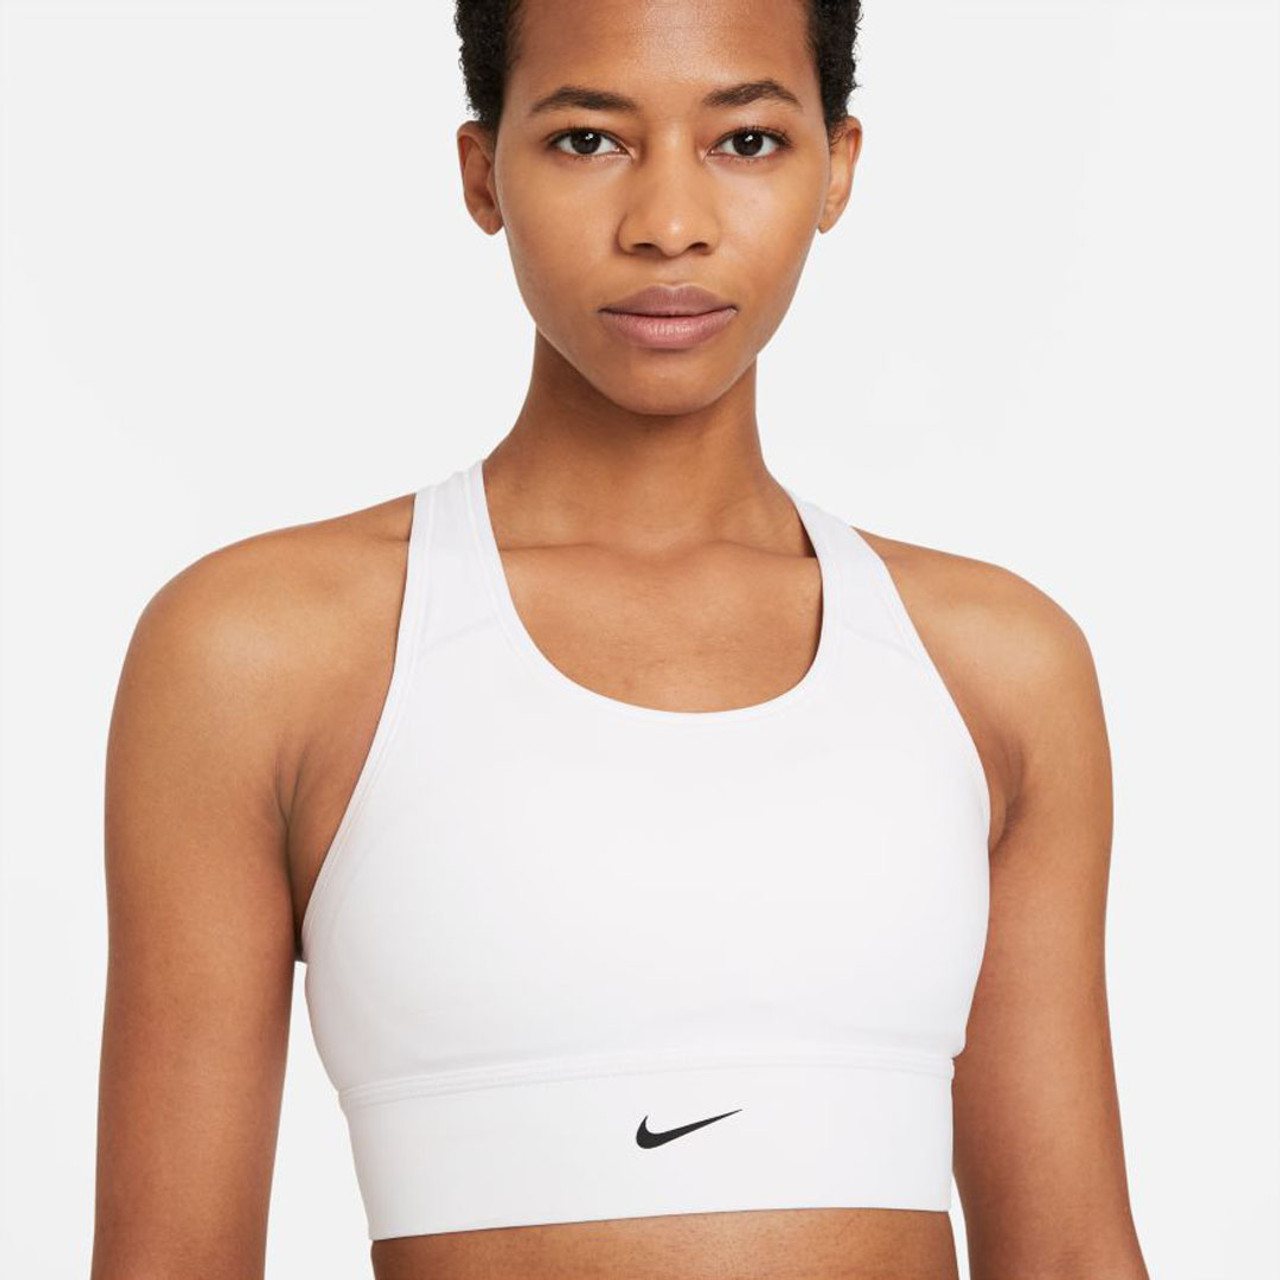 Women's, Nike Dri-FIT Swoosh Soft Tee Sports Bra